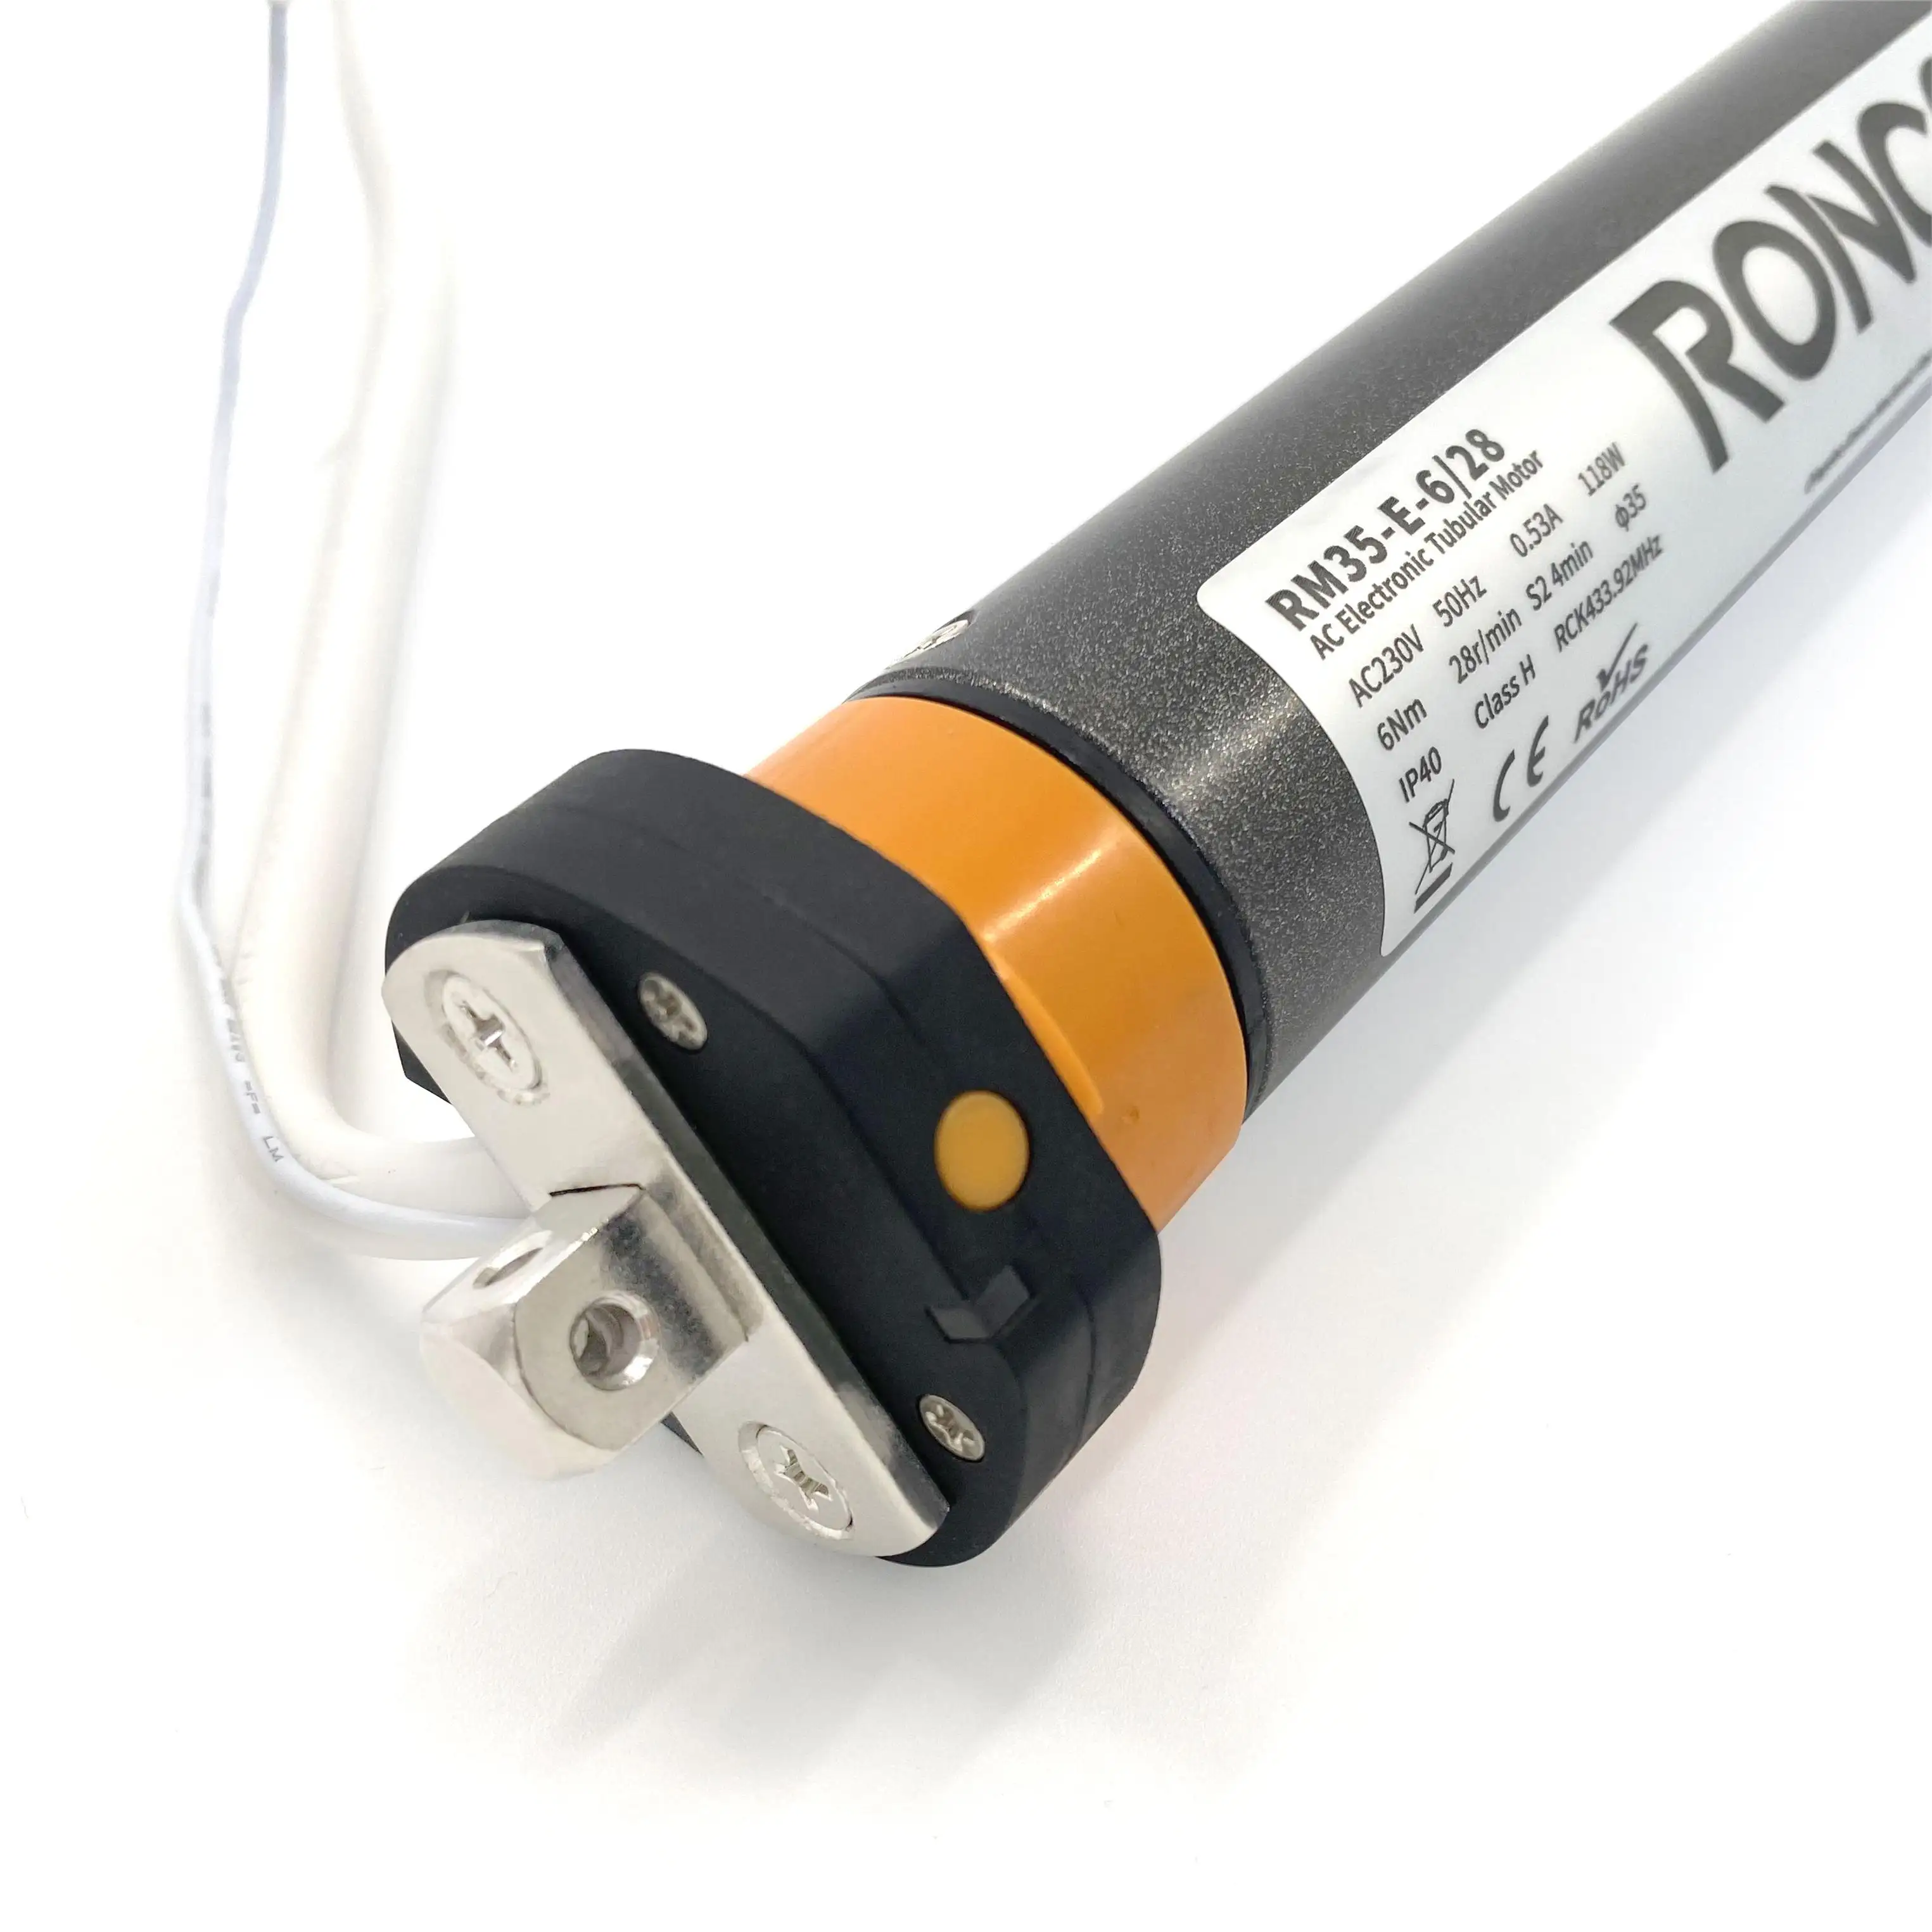 RM35-E 35mm אלקטרוני גבול חכם בית נמוך צריכת חשמל AC צינורי מנוע עבור רולר תריסי זברה תריסים